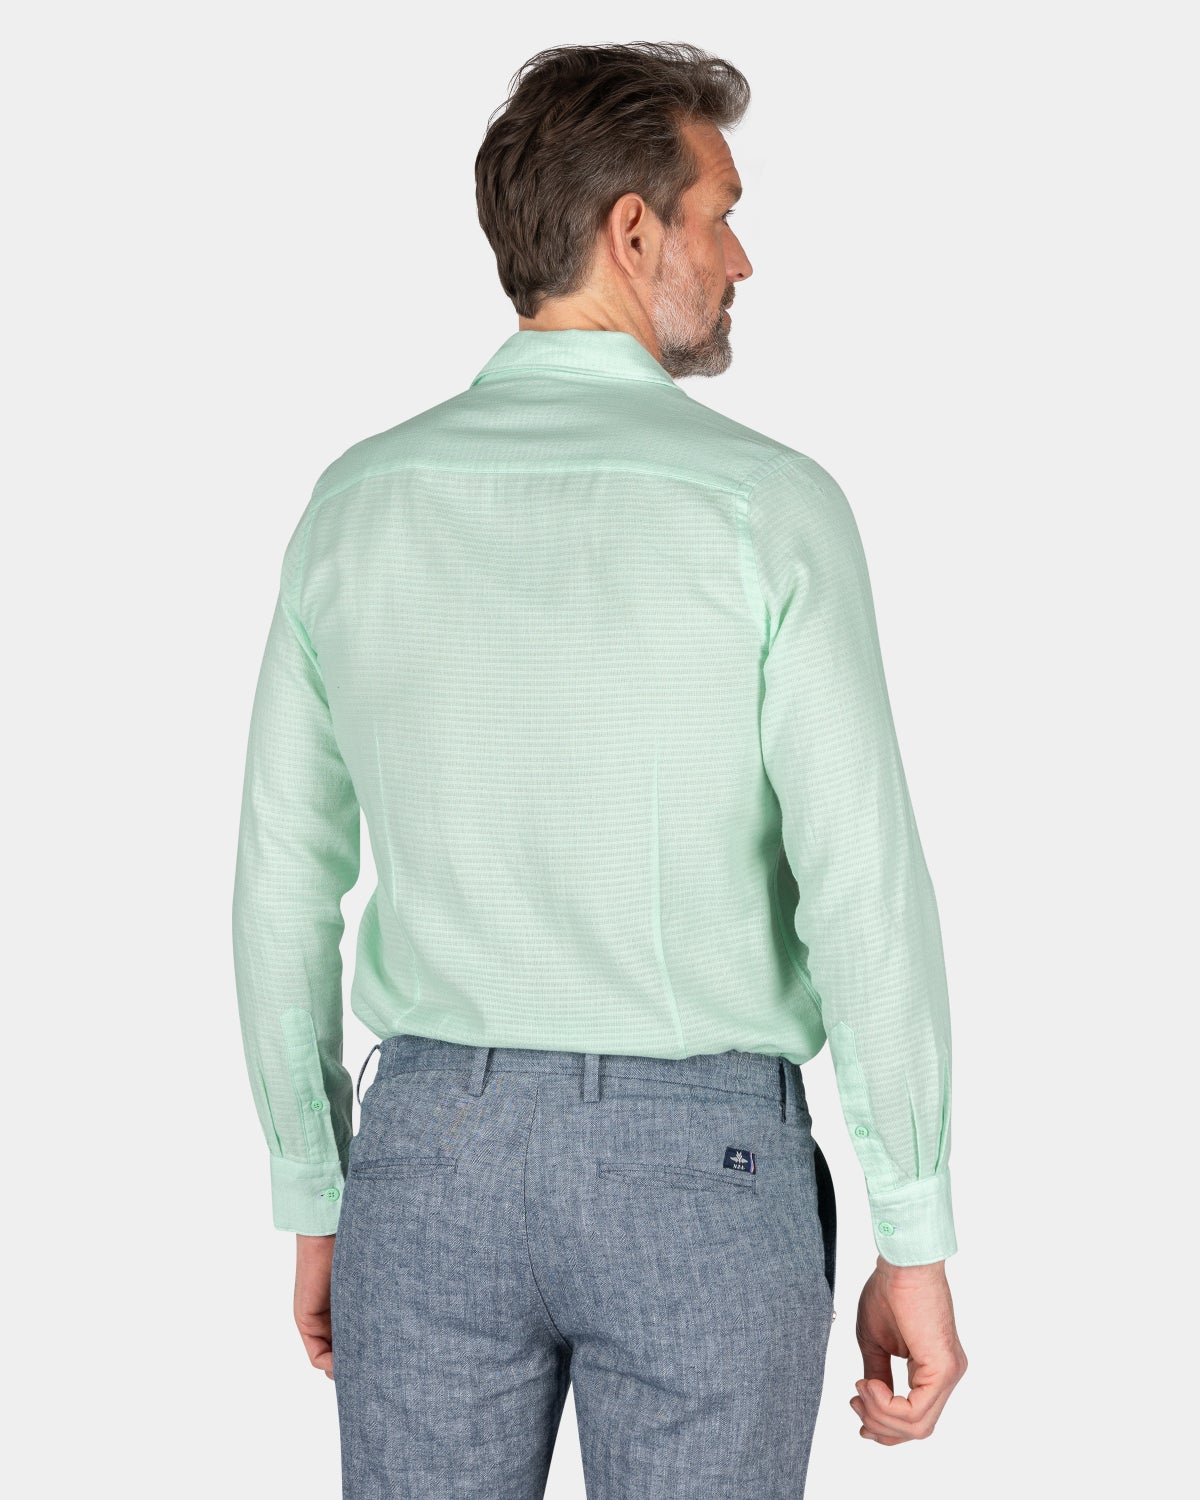 Baumwoll-Shirt - Teal Green